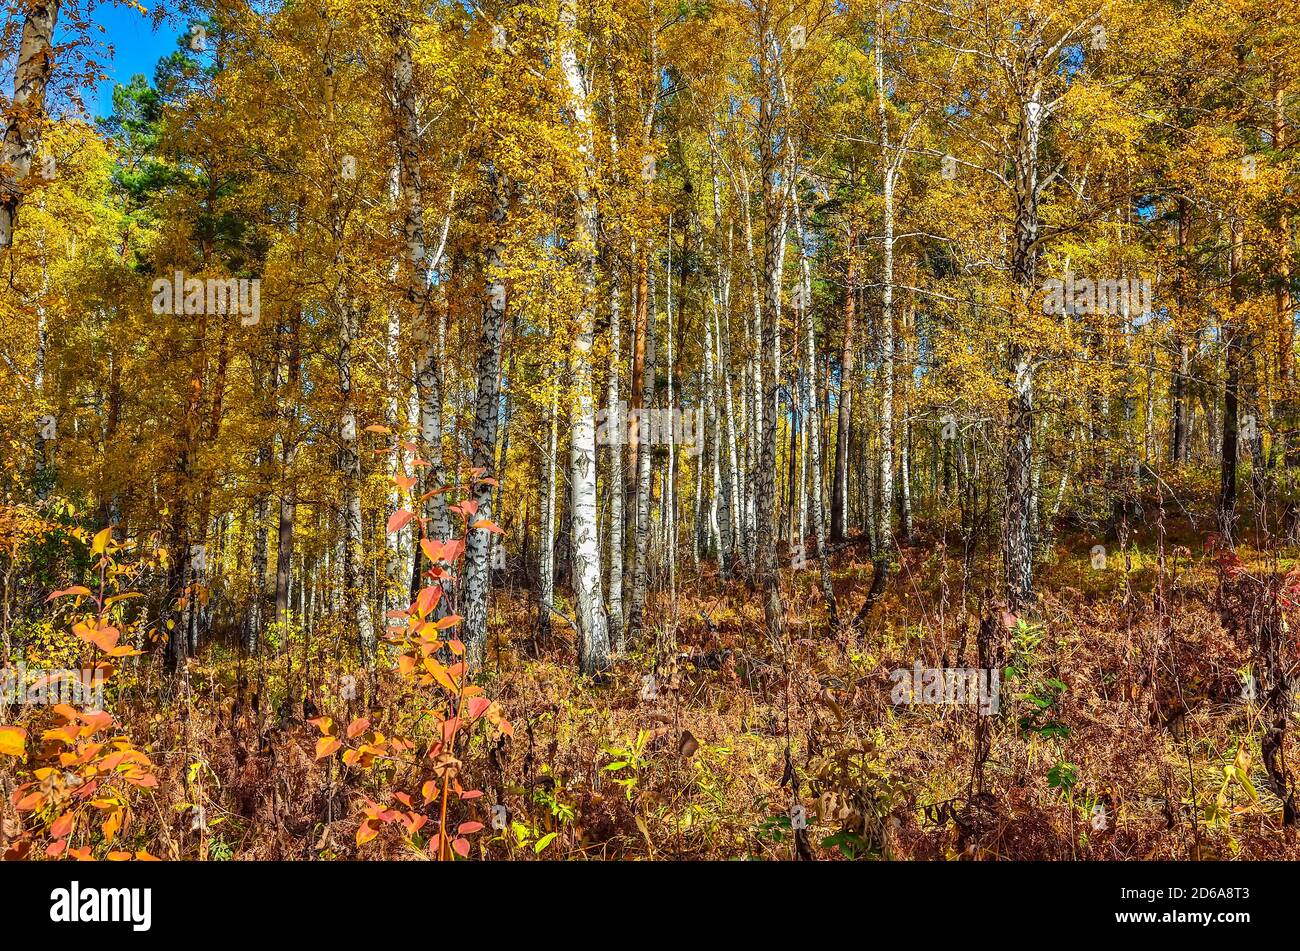 Helle bunte sonnige Herbstwaldlandschaft - Märchen von Herbstnatur. Bunte Laub von Bäumen, Sträuchern, grünen Nadeln von Kiefern, weißen Stämmen Stockfoto